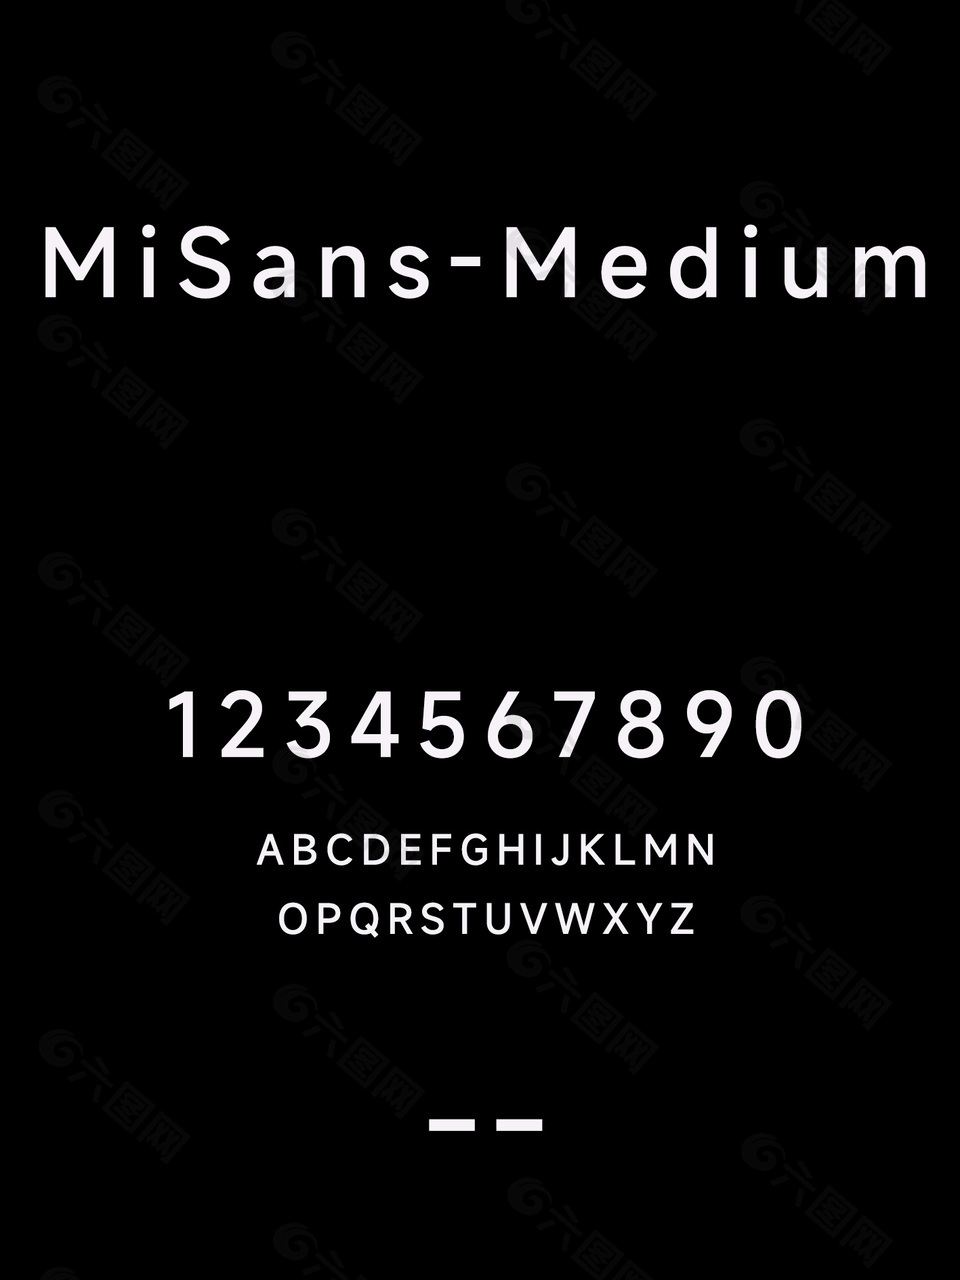 MiSans-Medium简体字体包